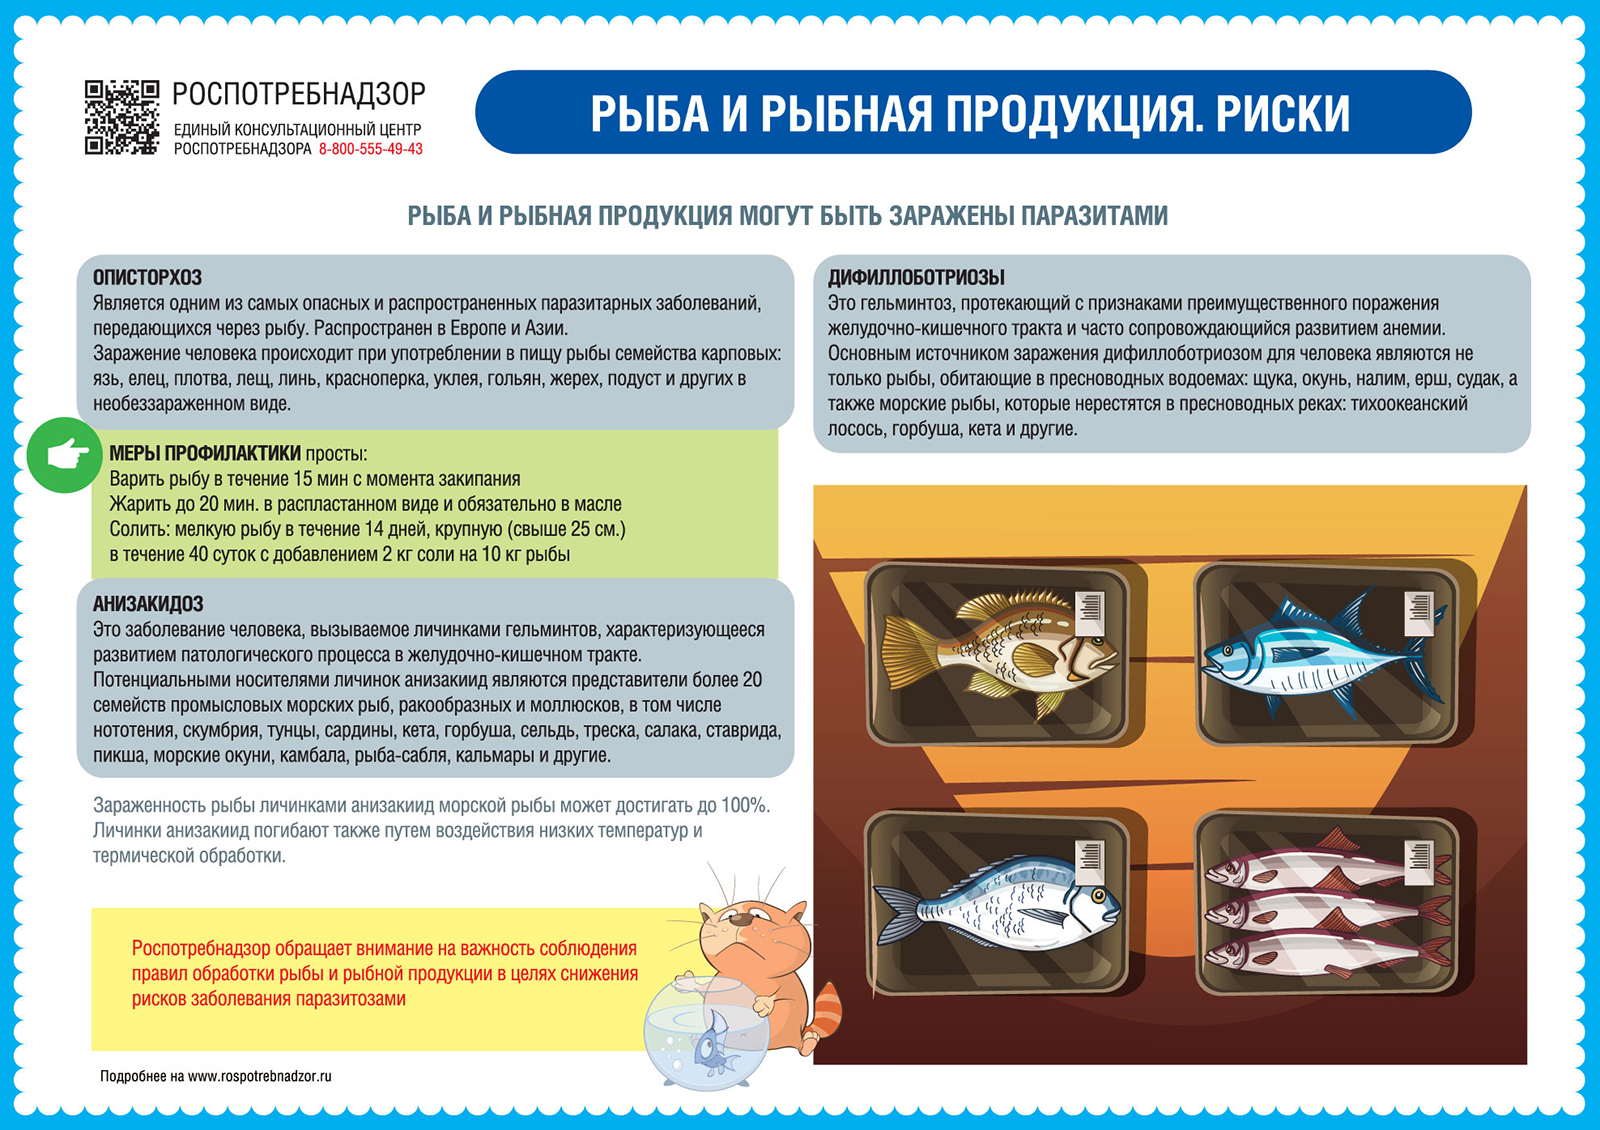 Рыба и рыбные продукты. Риски